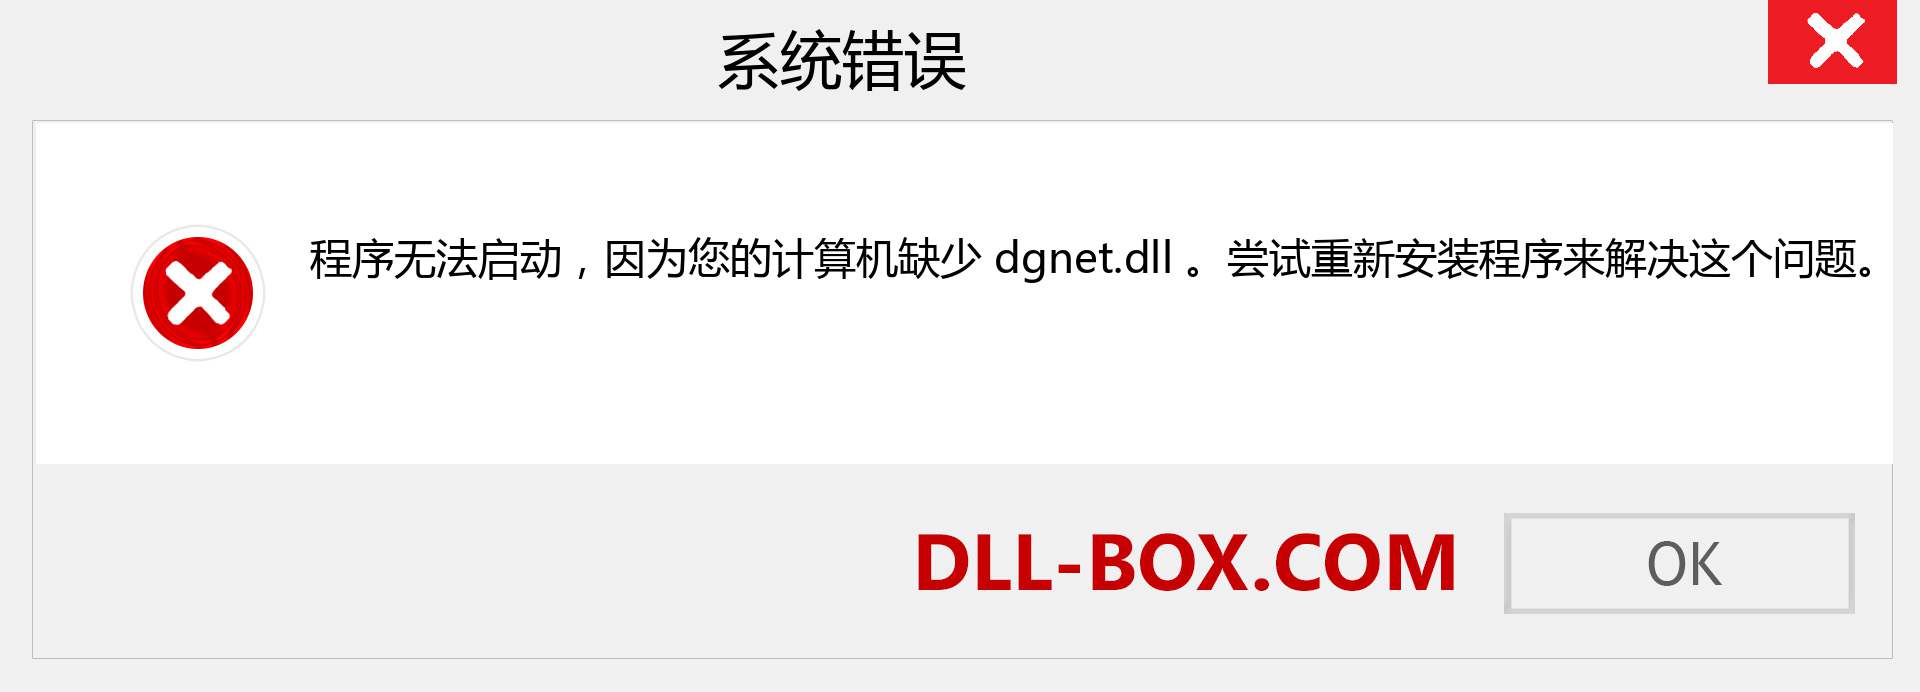 dgnet.dll 文件丢失？。 适用于 Windows 7、8、10 的下载 - 修复 Windows、照片、图像上的 dgnet dll 丢失错误